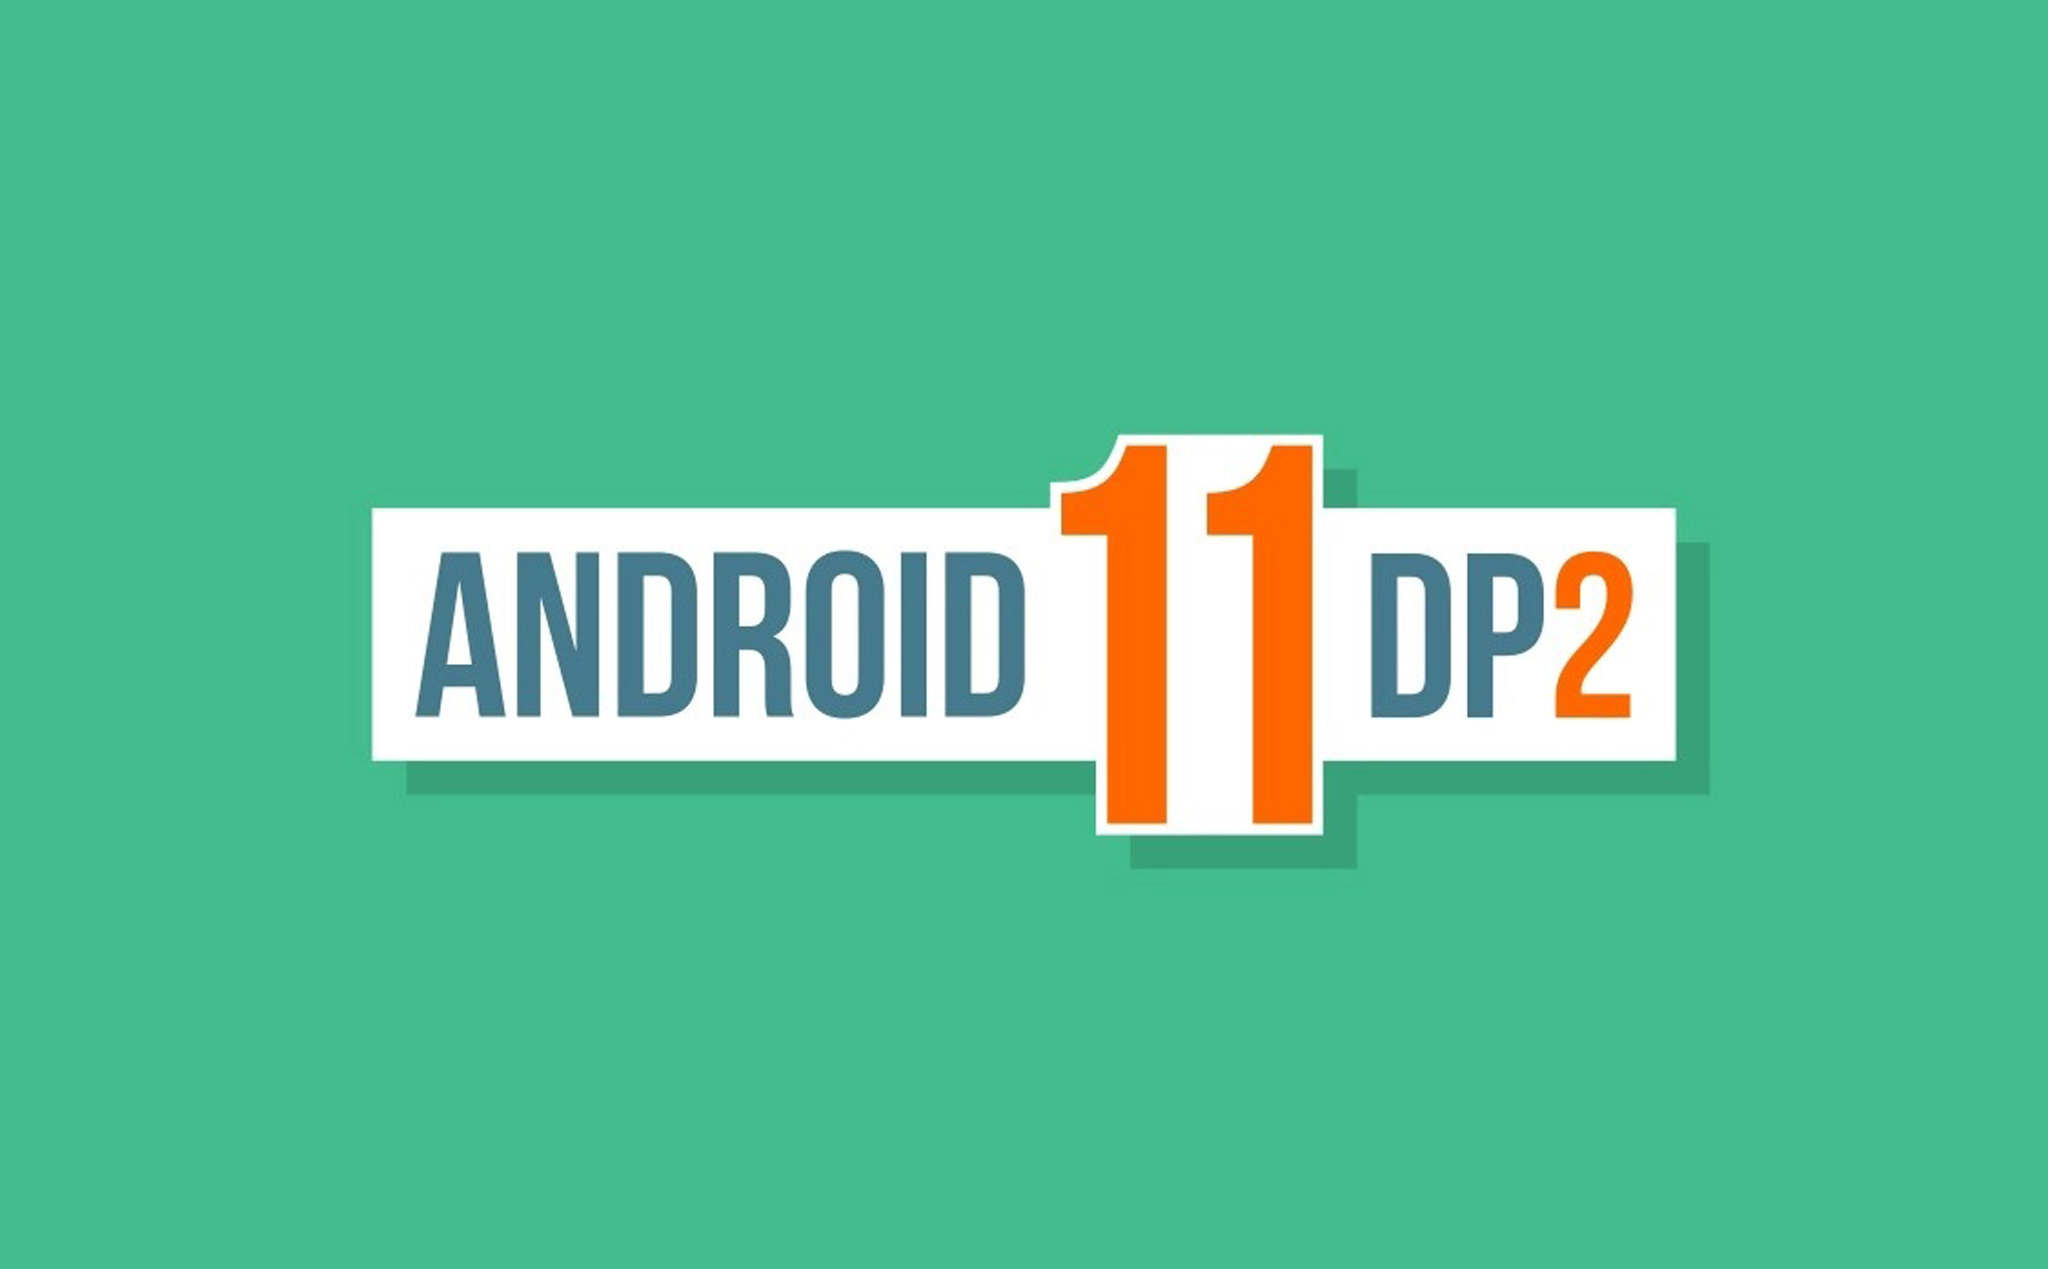 Android 11 Developer Preview 2 ra mắt: hỗ trợ tốt hơn các thiết bị gập, màn hình tần số quét cao...